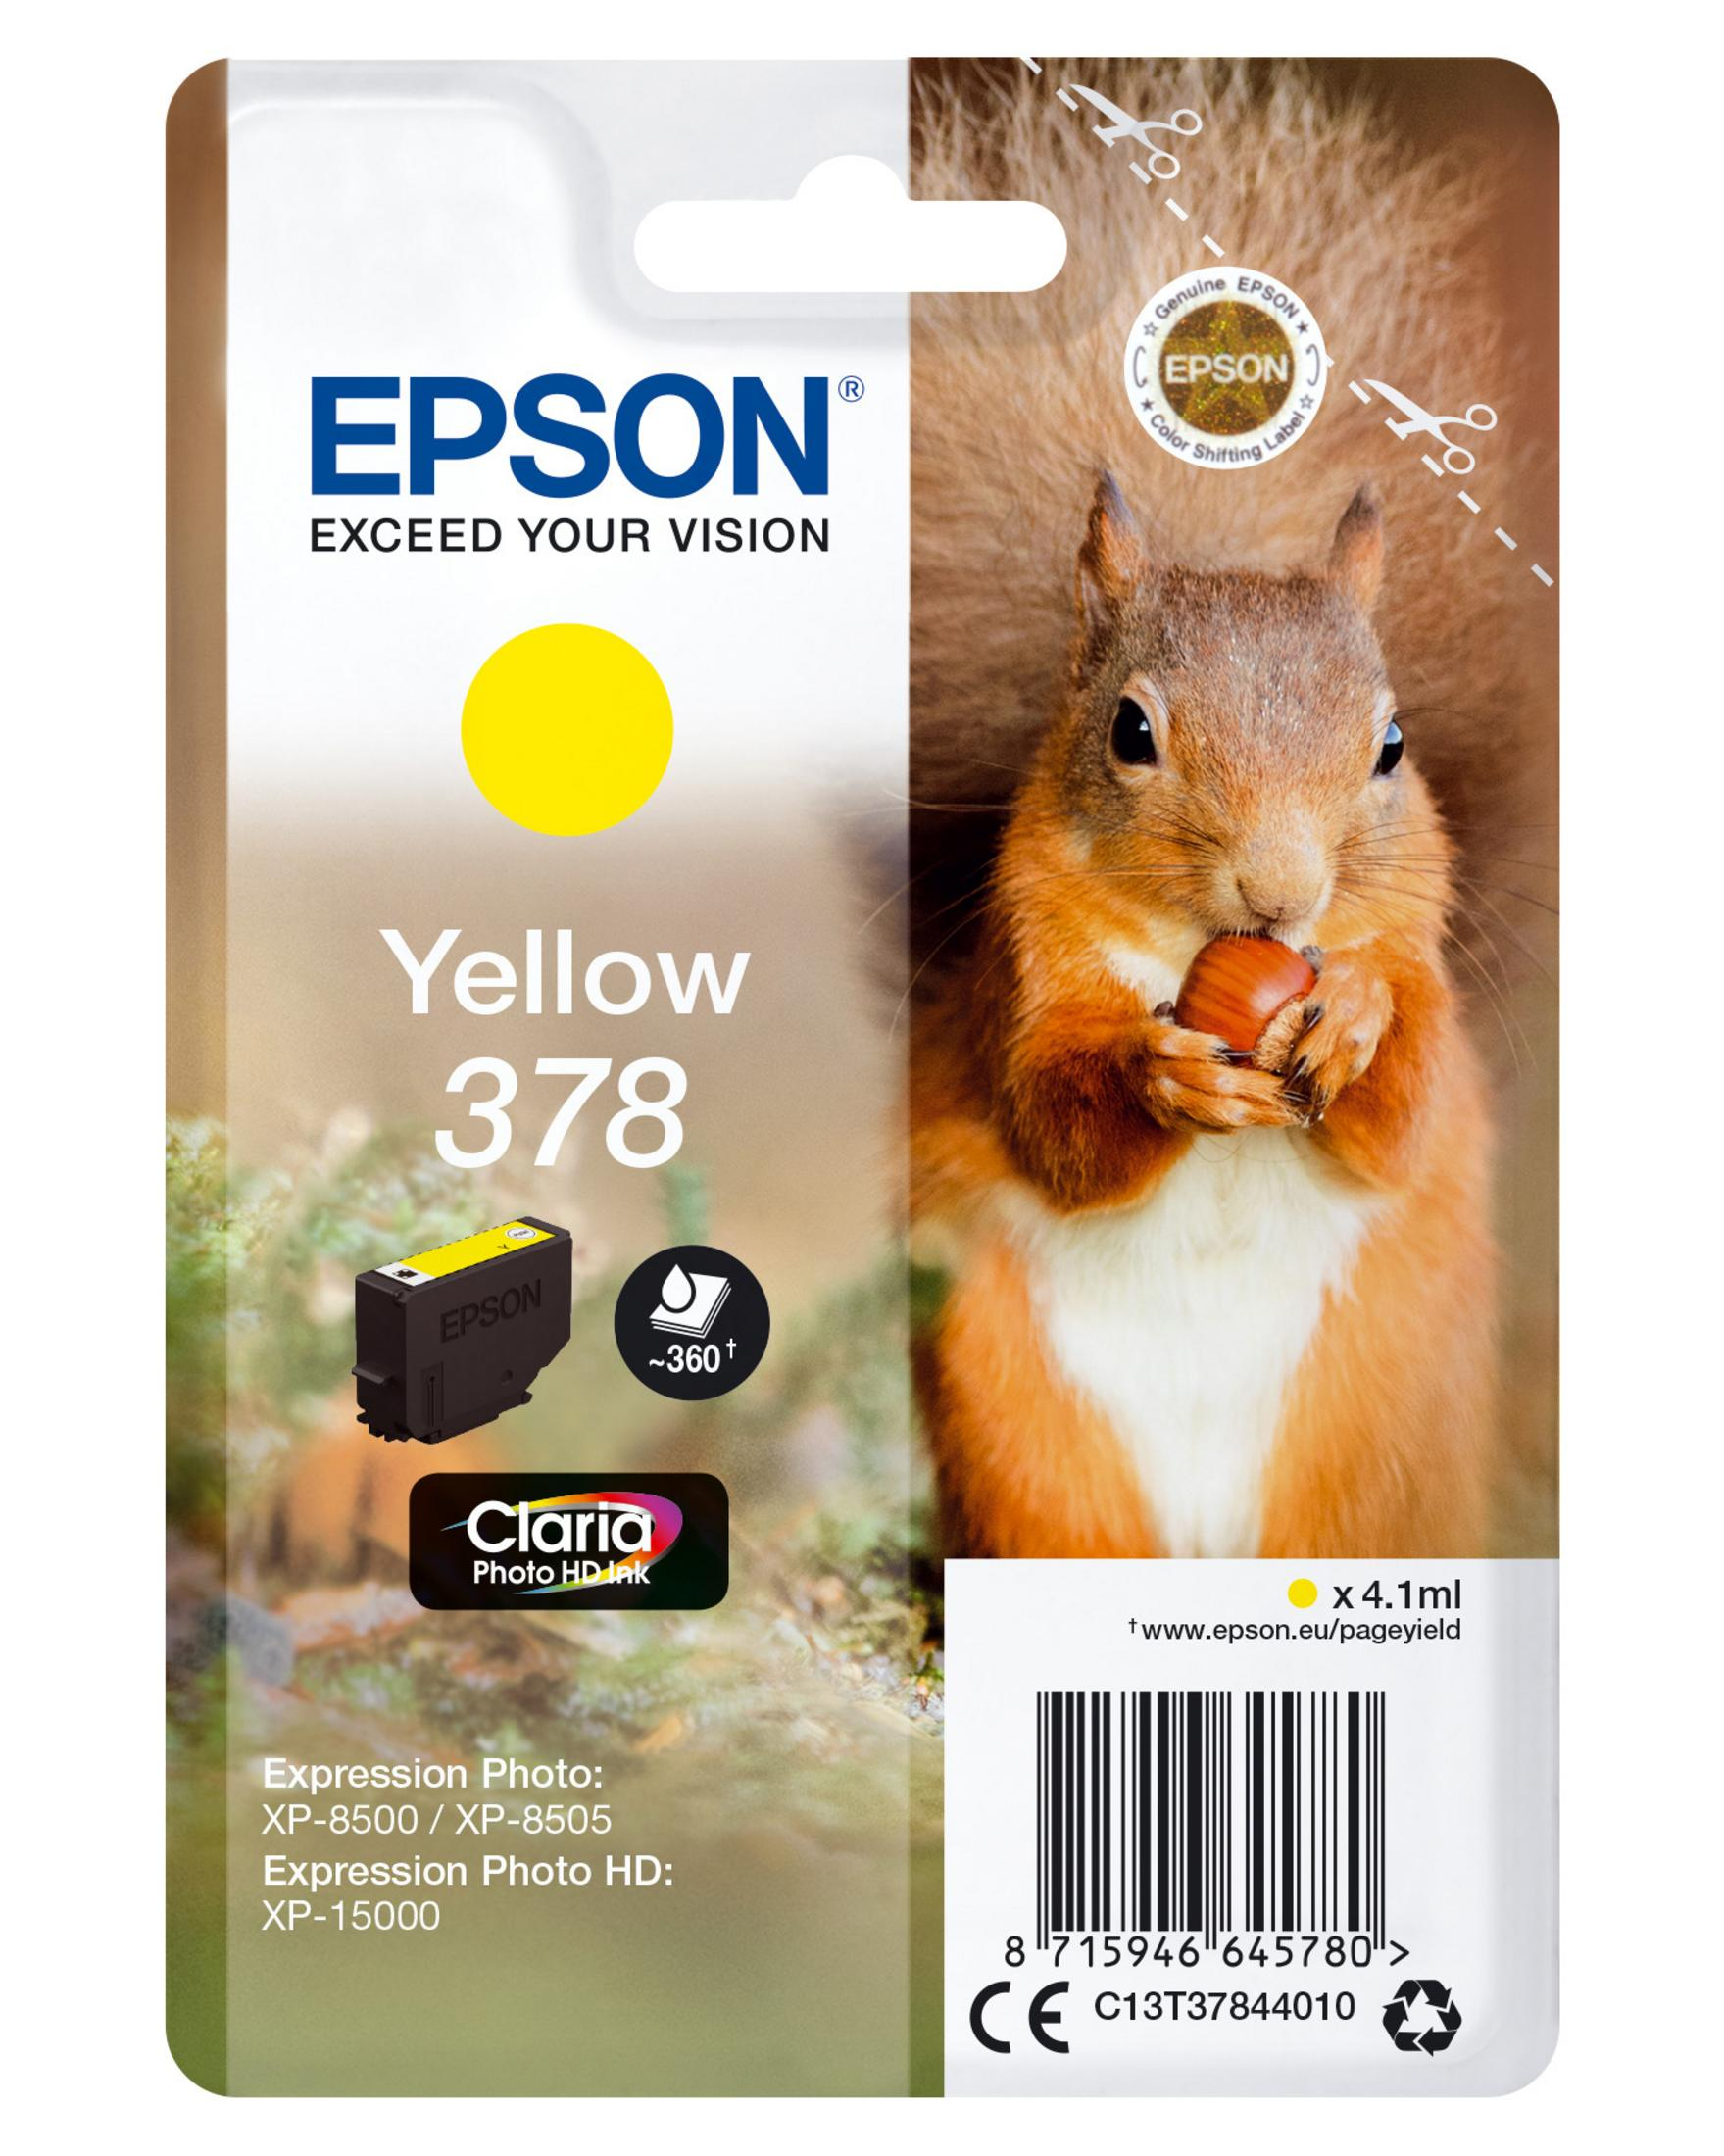 EPSON 378 Tinte (C13T37844010) yellow